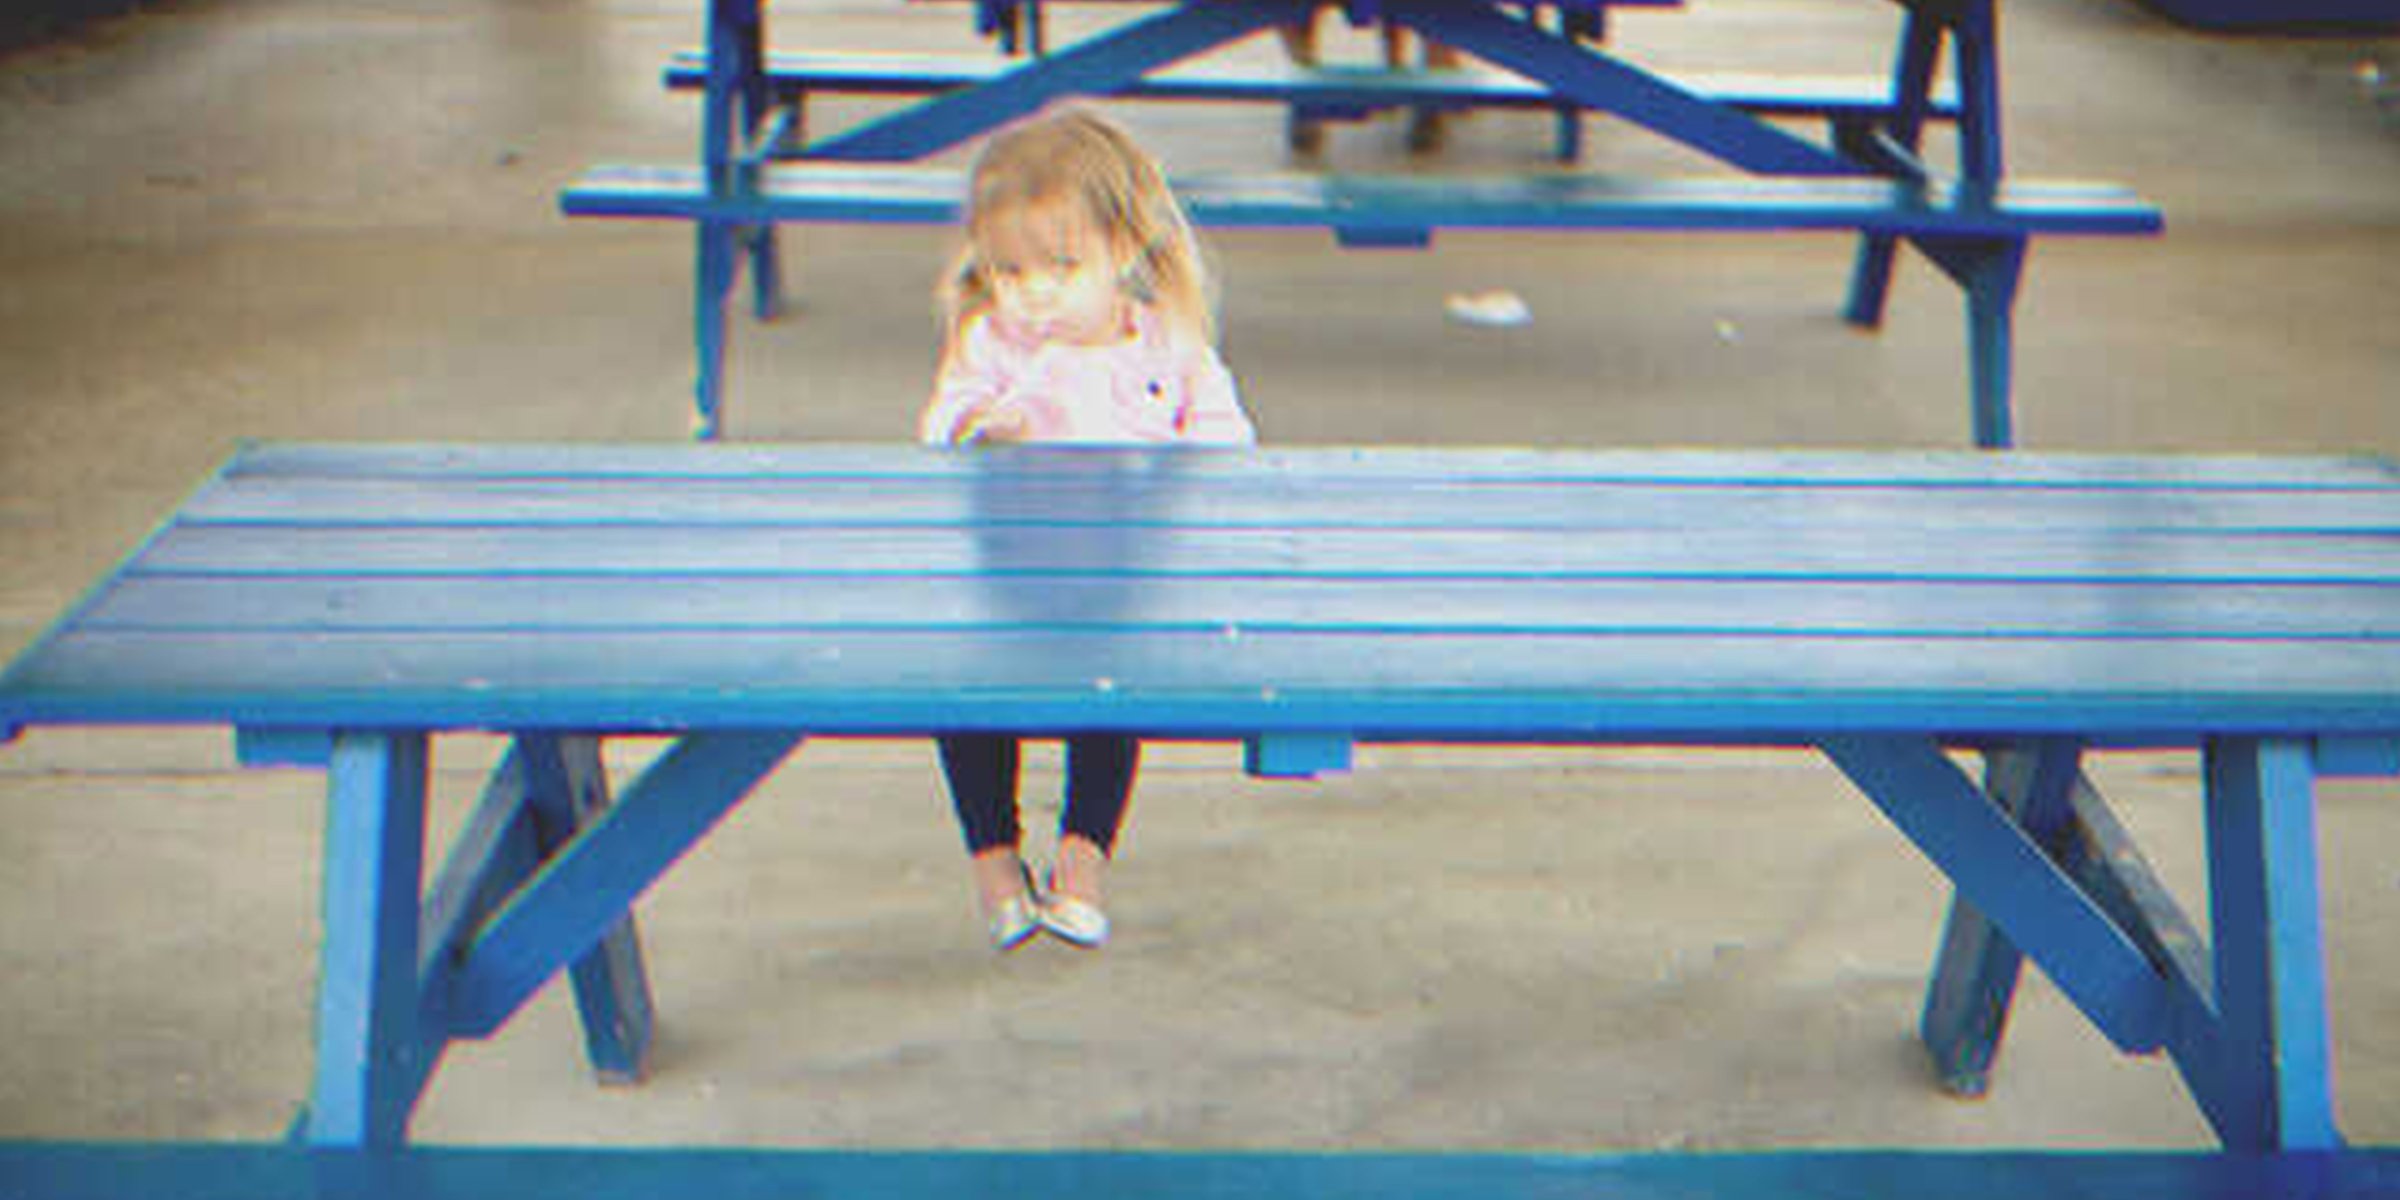 Una niña sentada sola en un banco | Foto: Flickr.com/Donnie Ray Jones (CC BY 2.0)